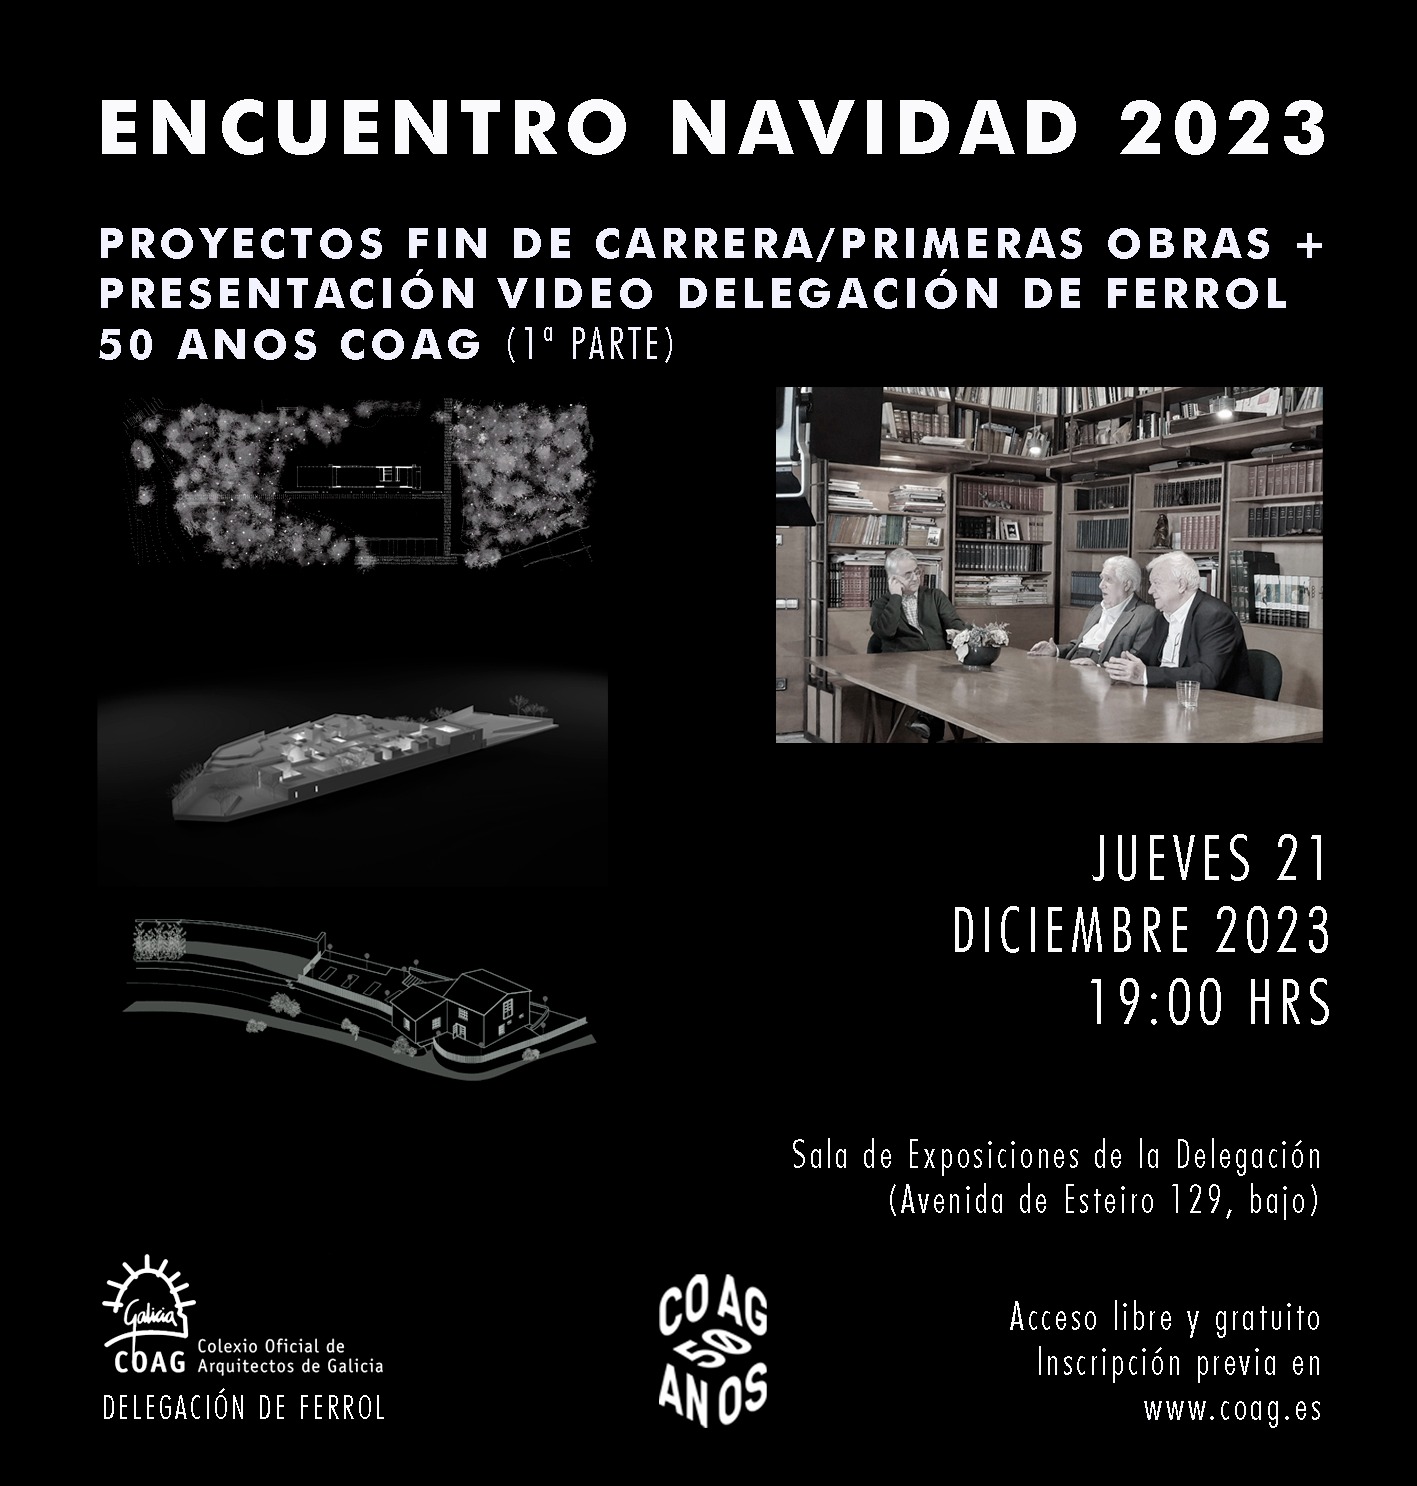 Encuentro Navidad 2023 [Proyectos fin de carrera/primeras obras + presentación vídeo Delegación de Ferrol. 50 años COAG]